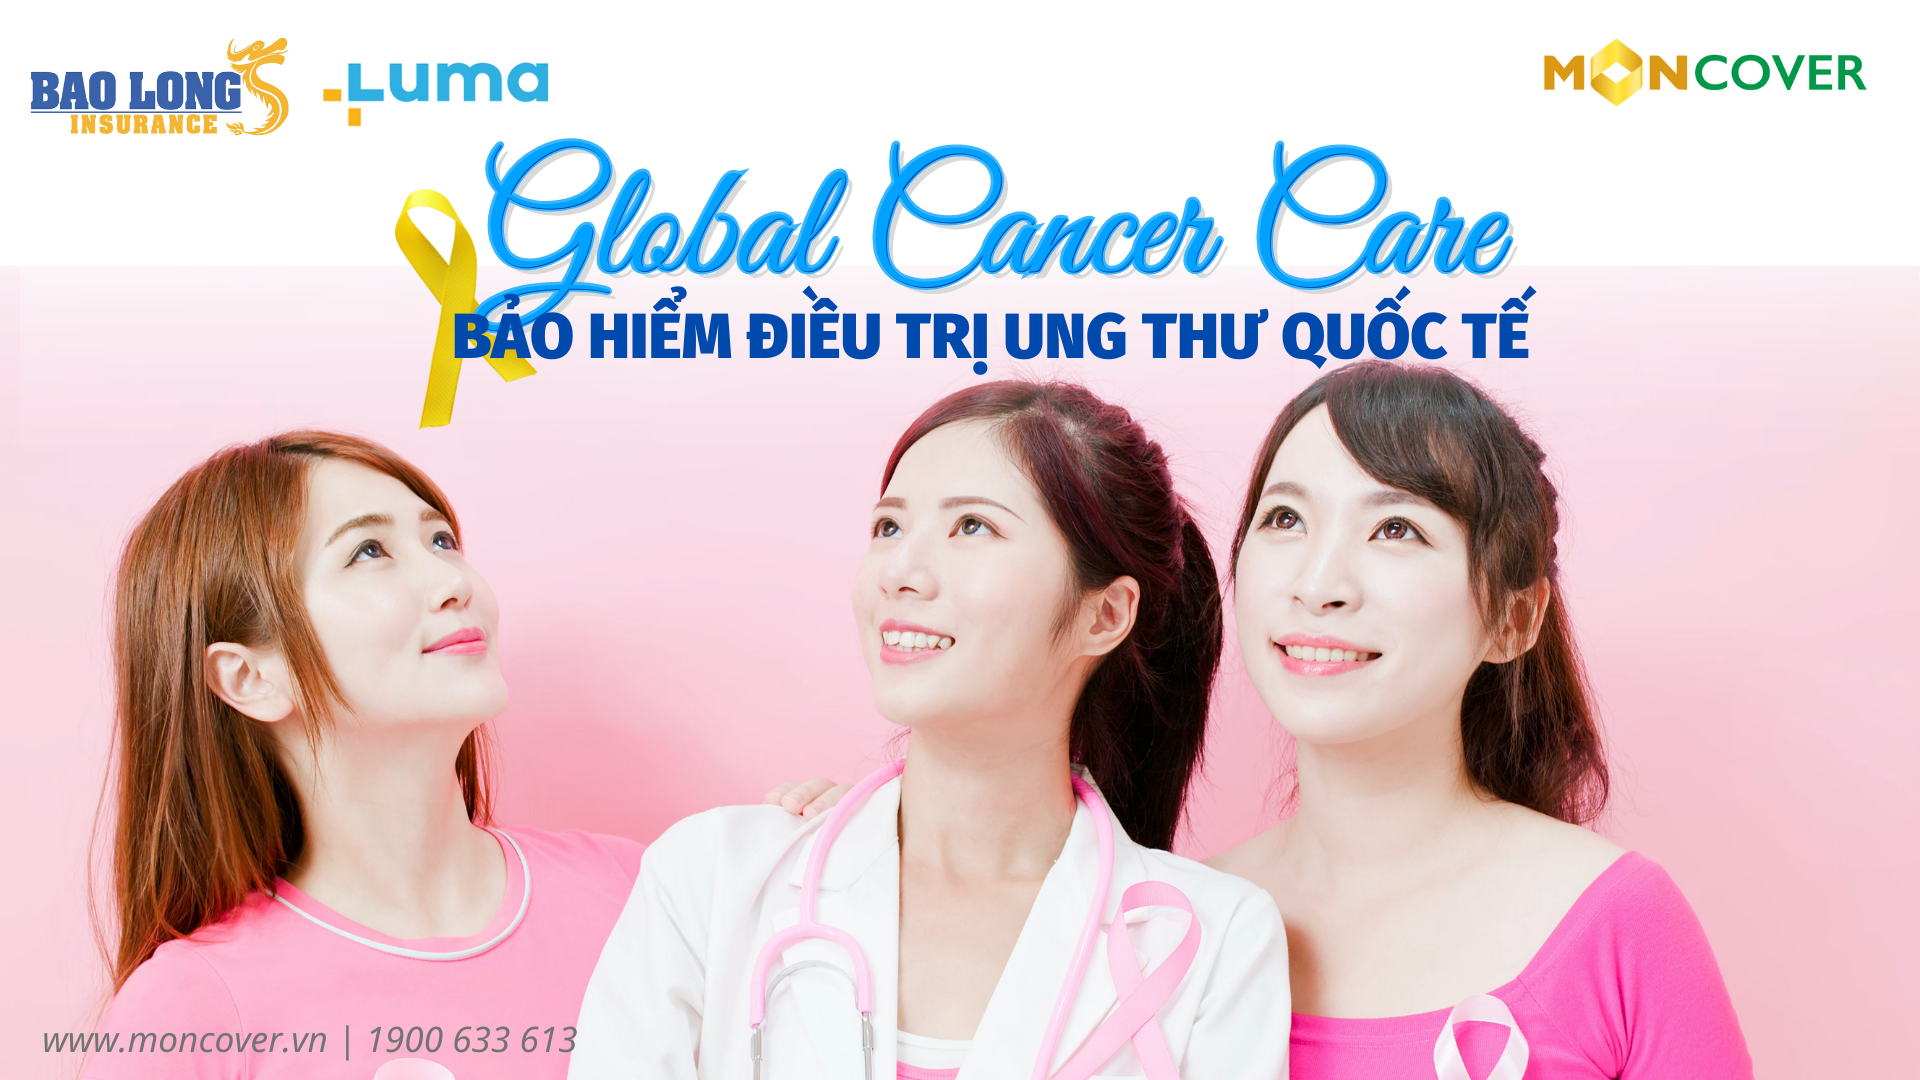 Bảo hiểm điều trị ung thư quốc tế - Global Cancer Care